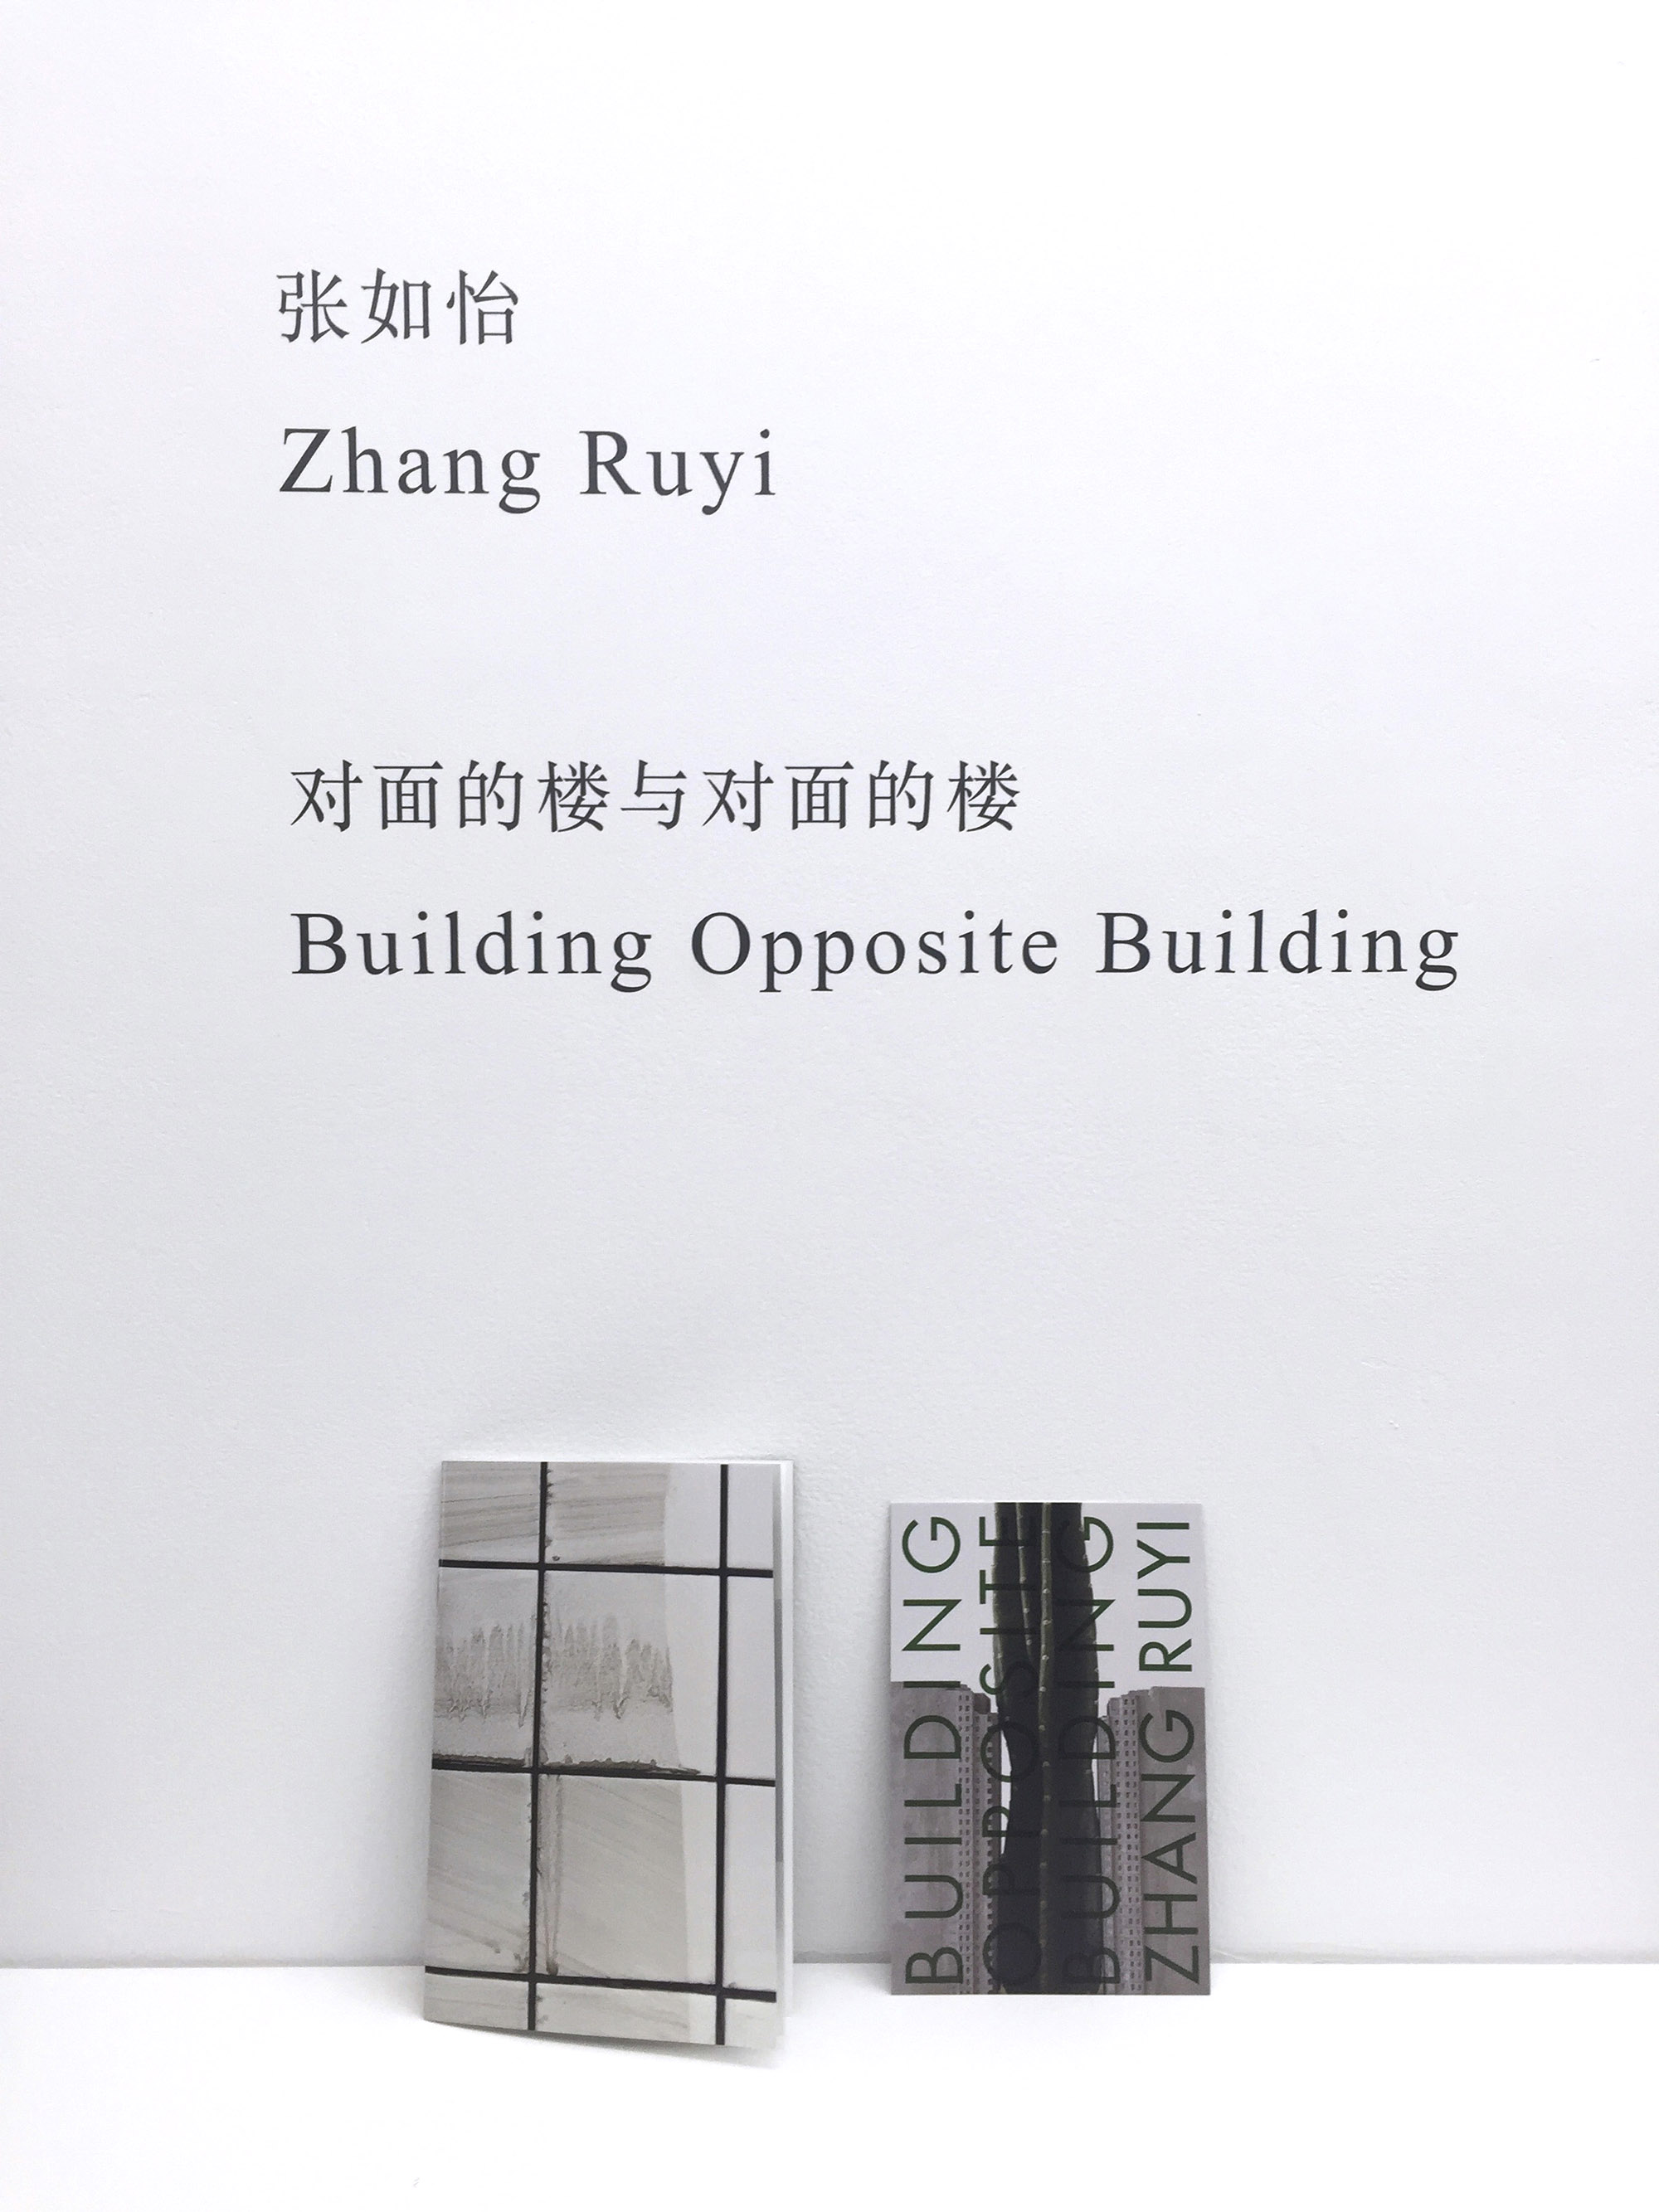 Building Opposite Building, ZhangRuyi 张如怡, 2016